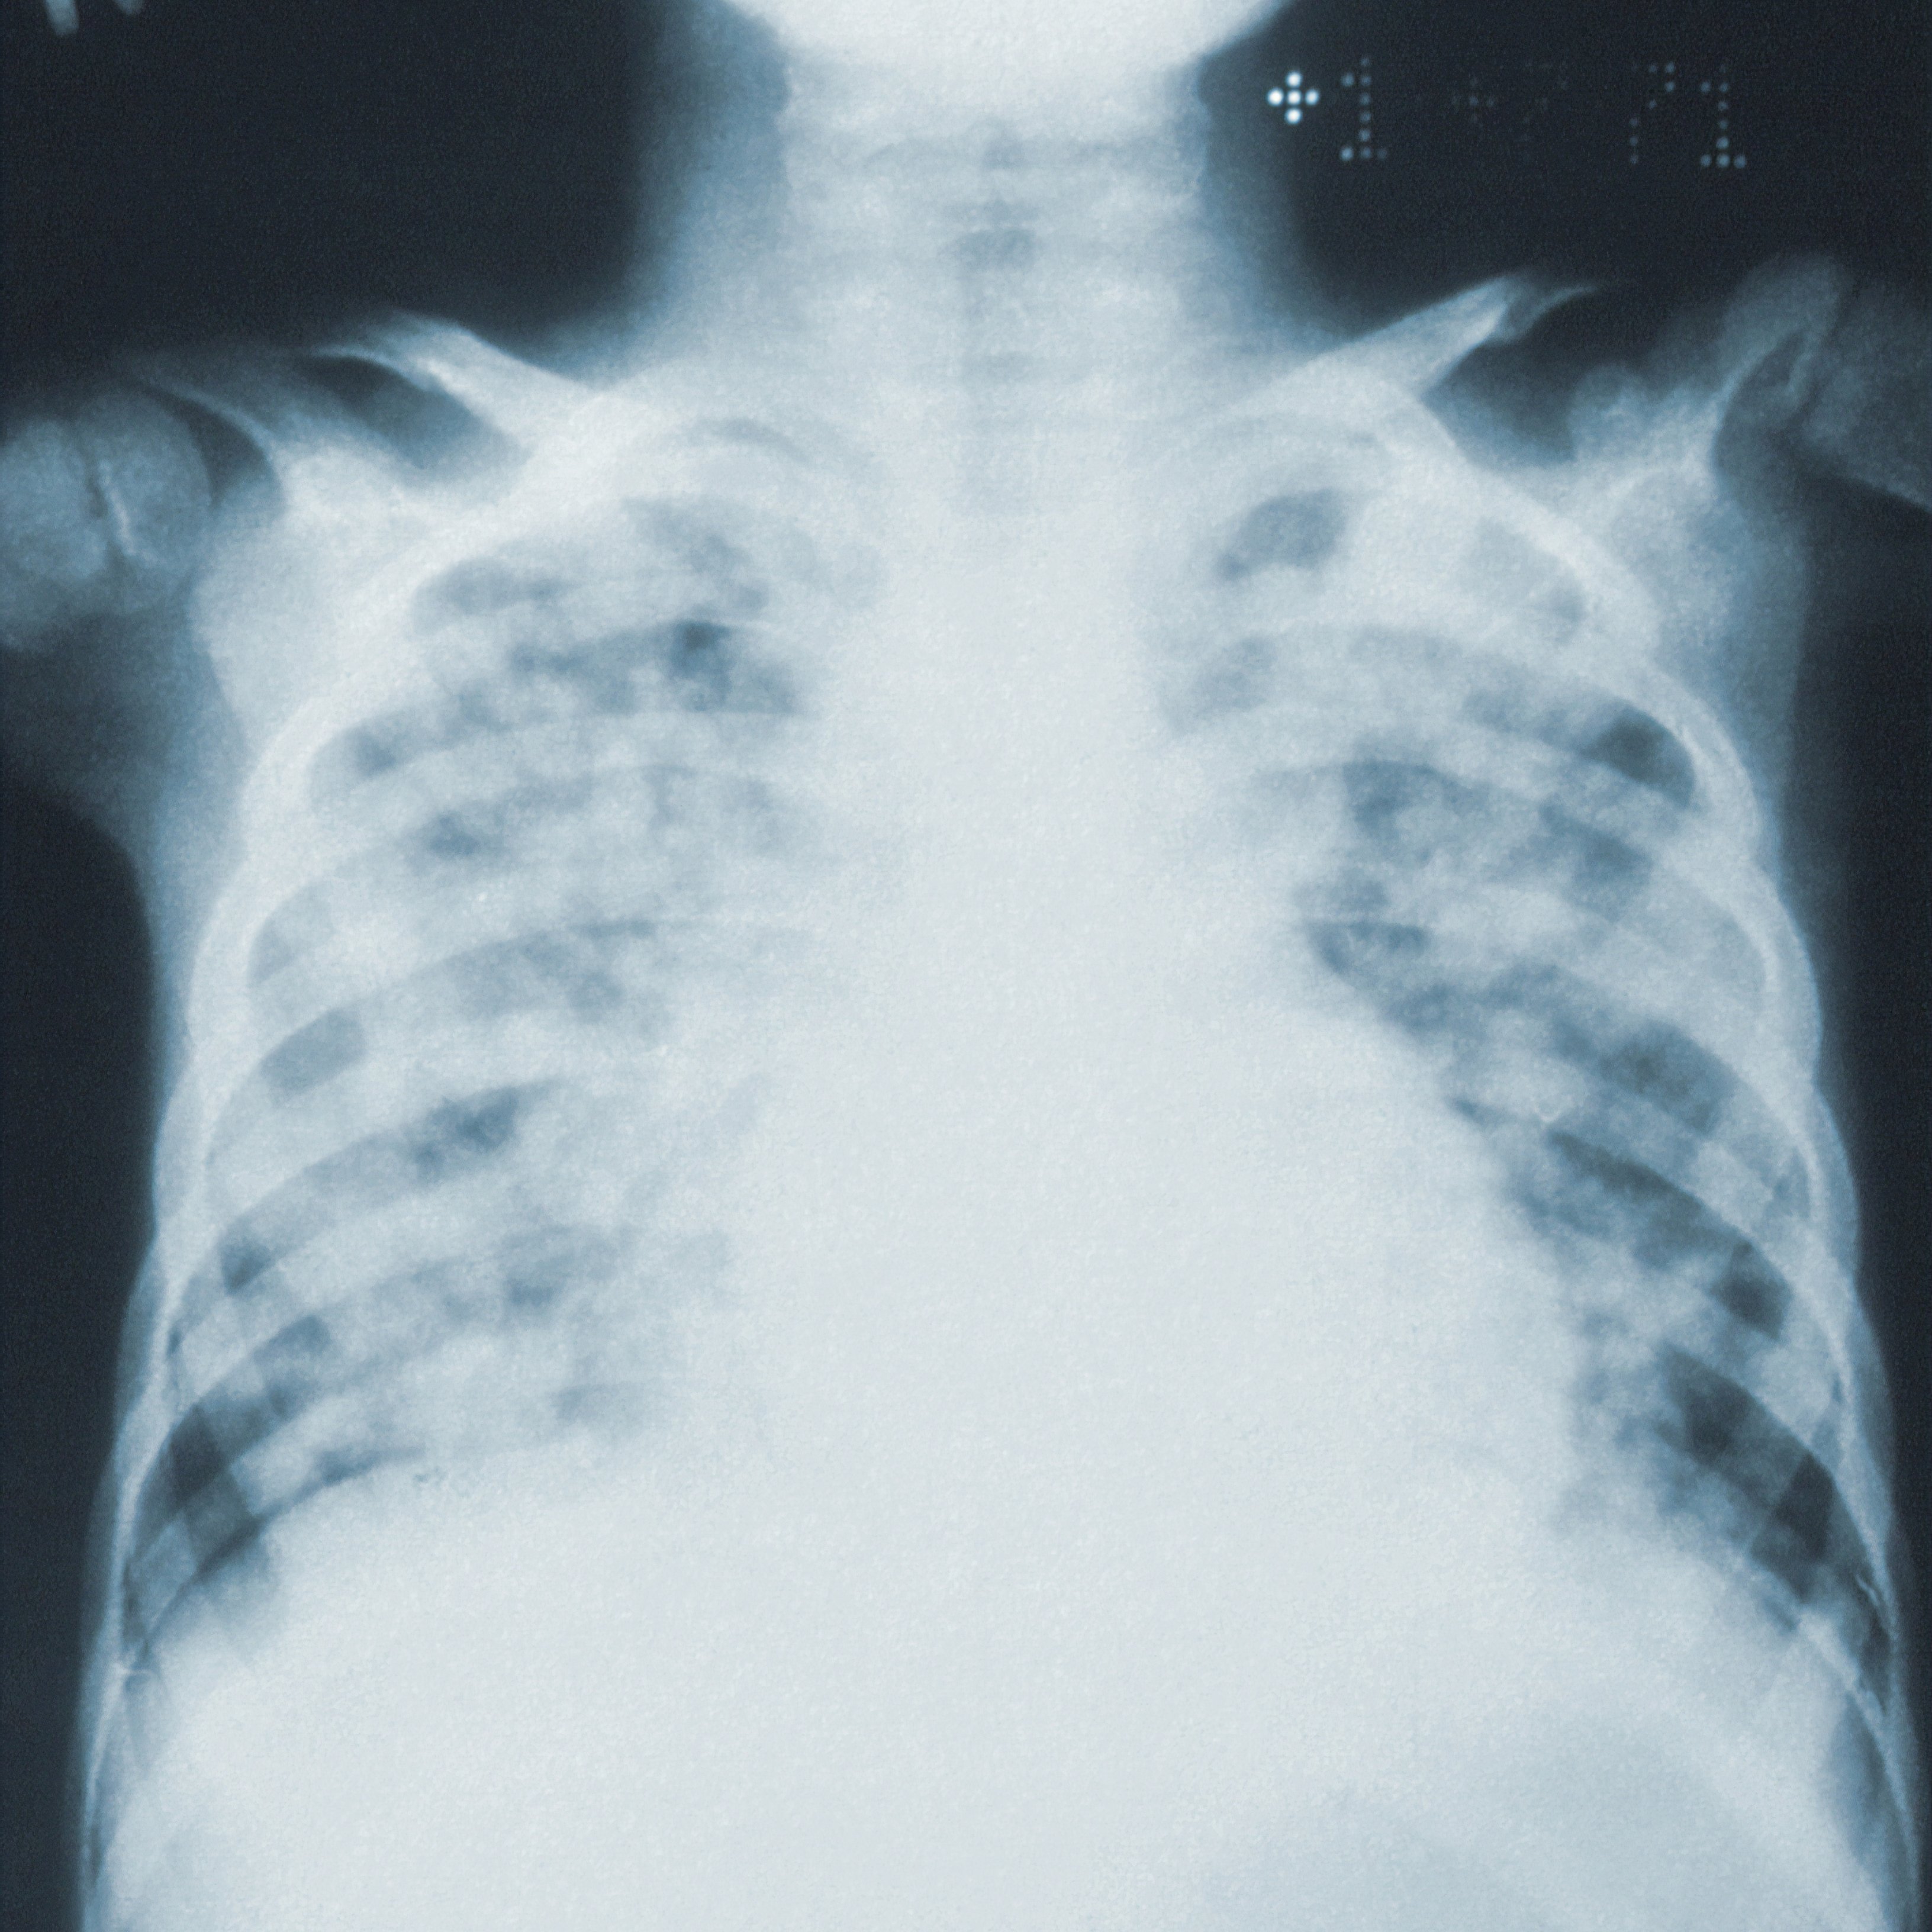 Què diferencia la Covid-19 d'altres malalties infeccioses al pulmó